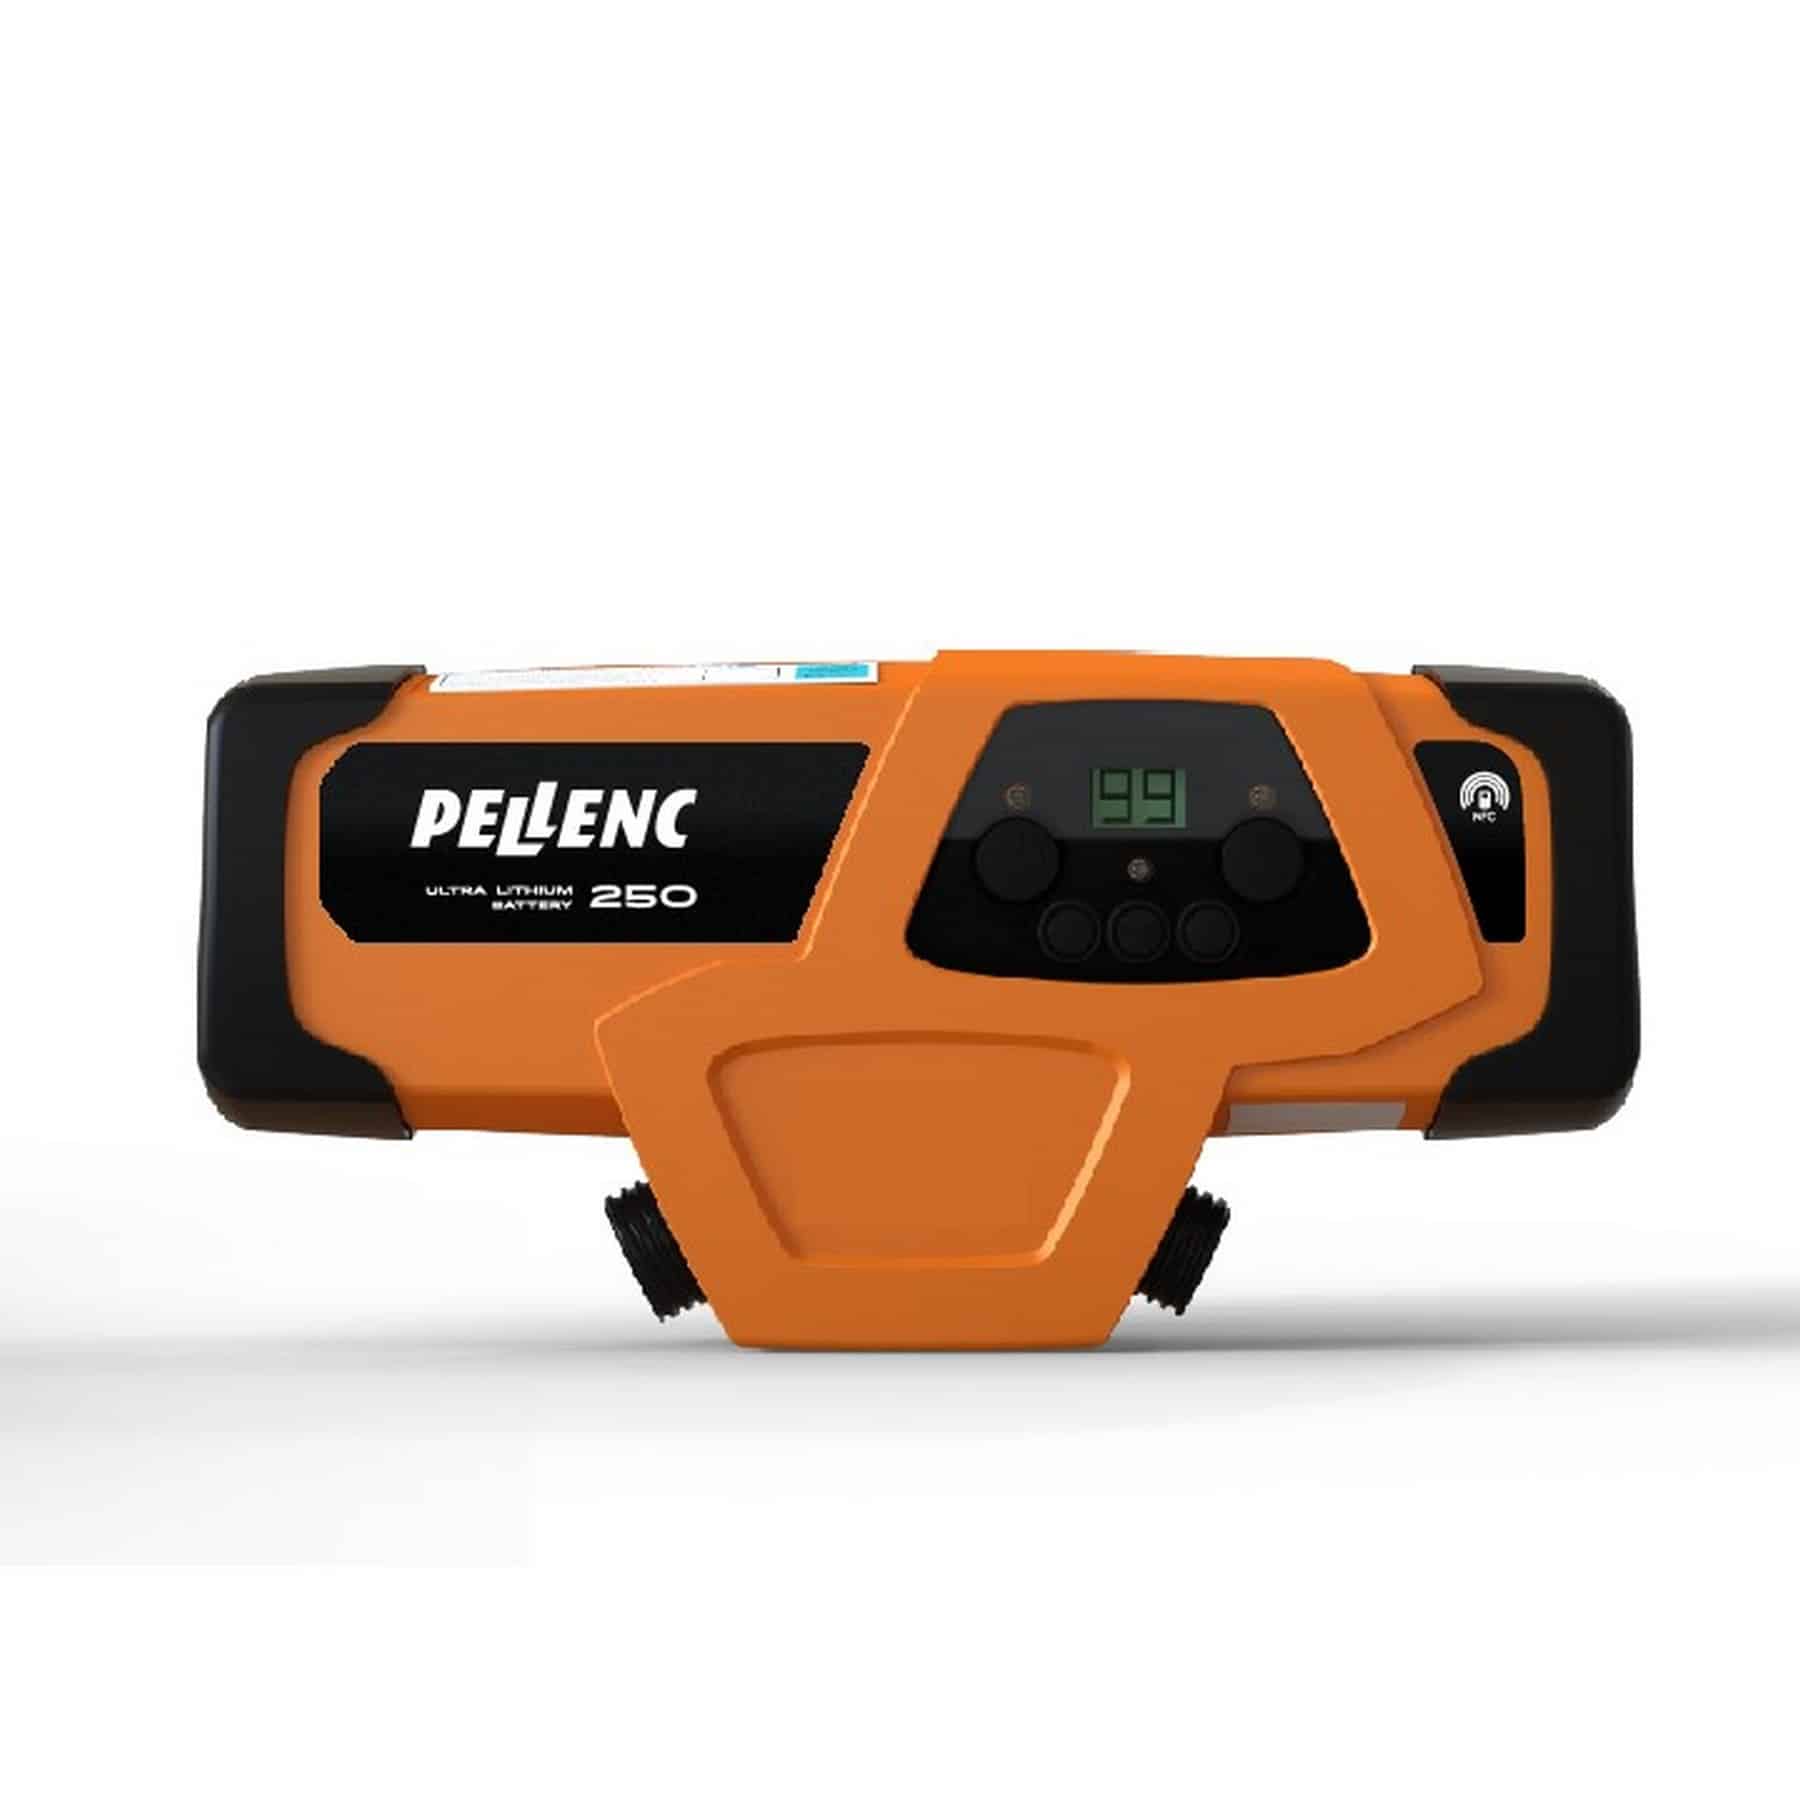 Pellenc Pellenc Prunion 250 sécateur électrique sur